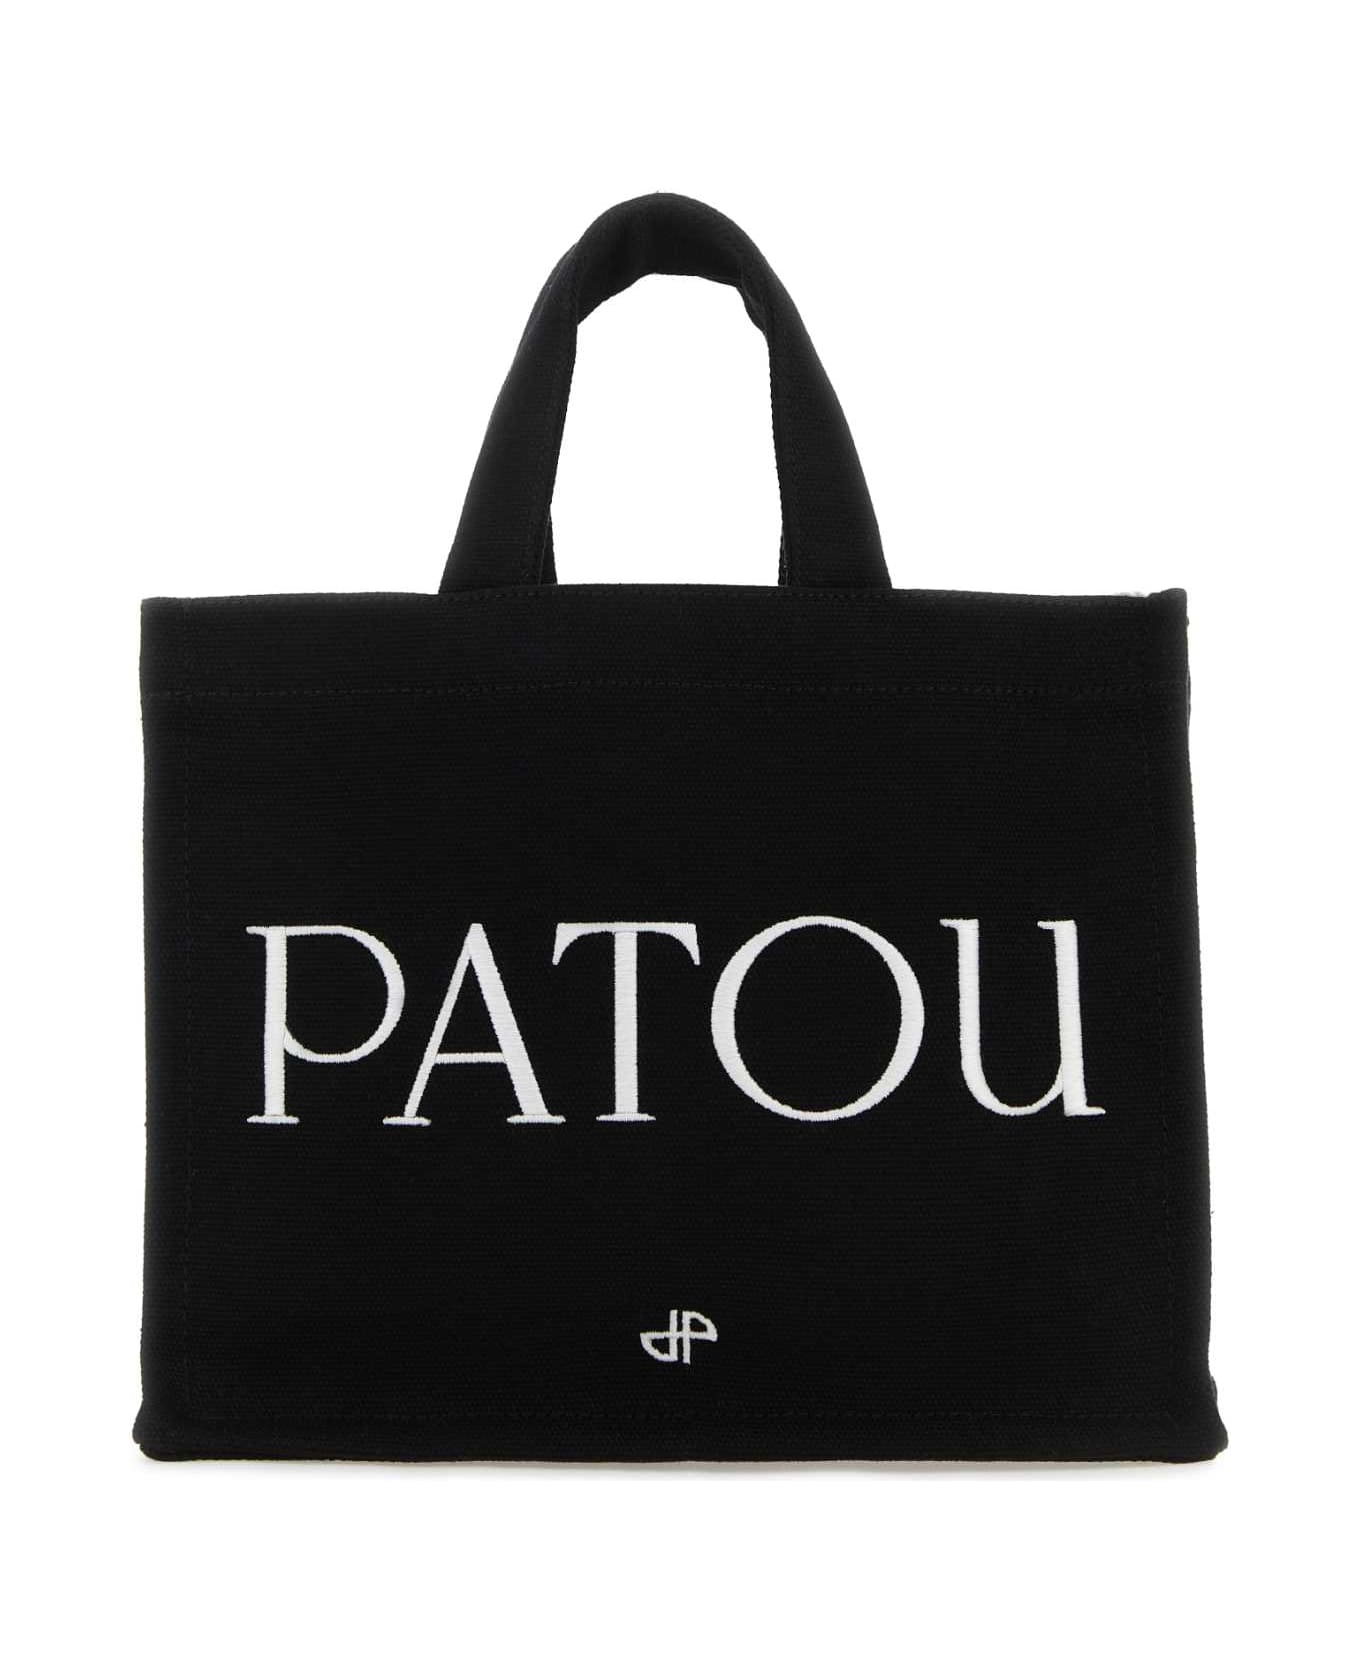 Patou Black Canvas Small Tote Patou Shopping Bag - BLACK